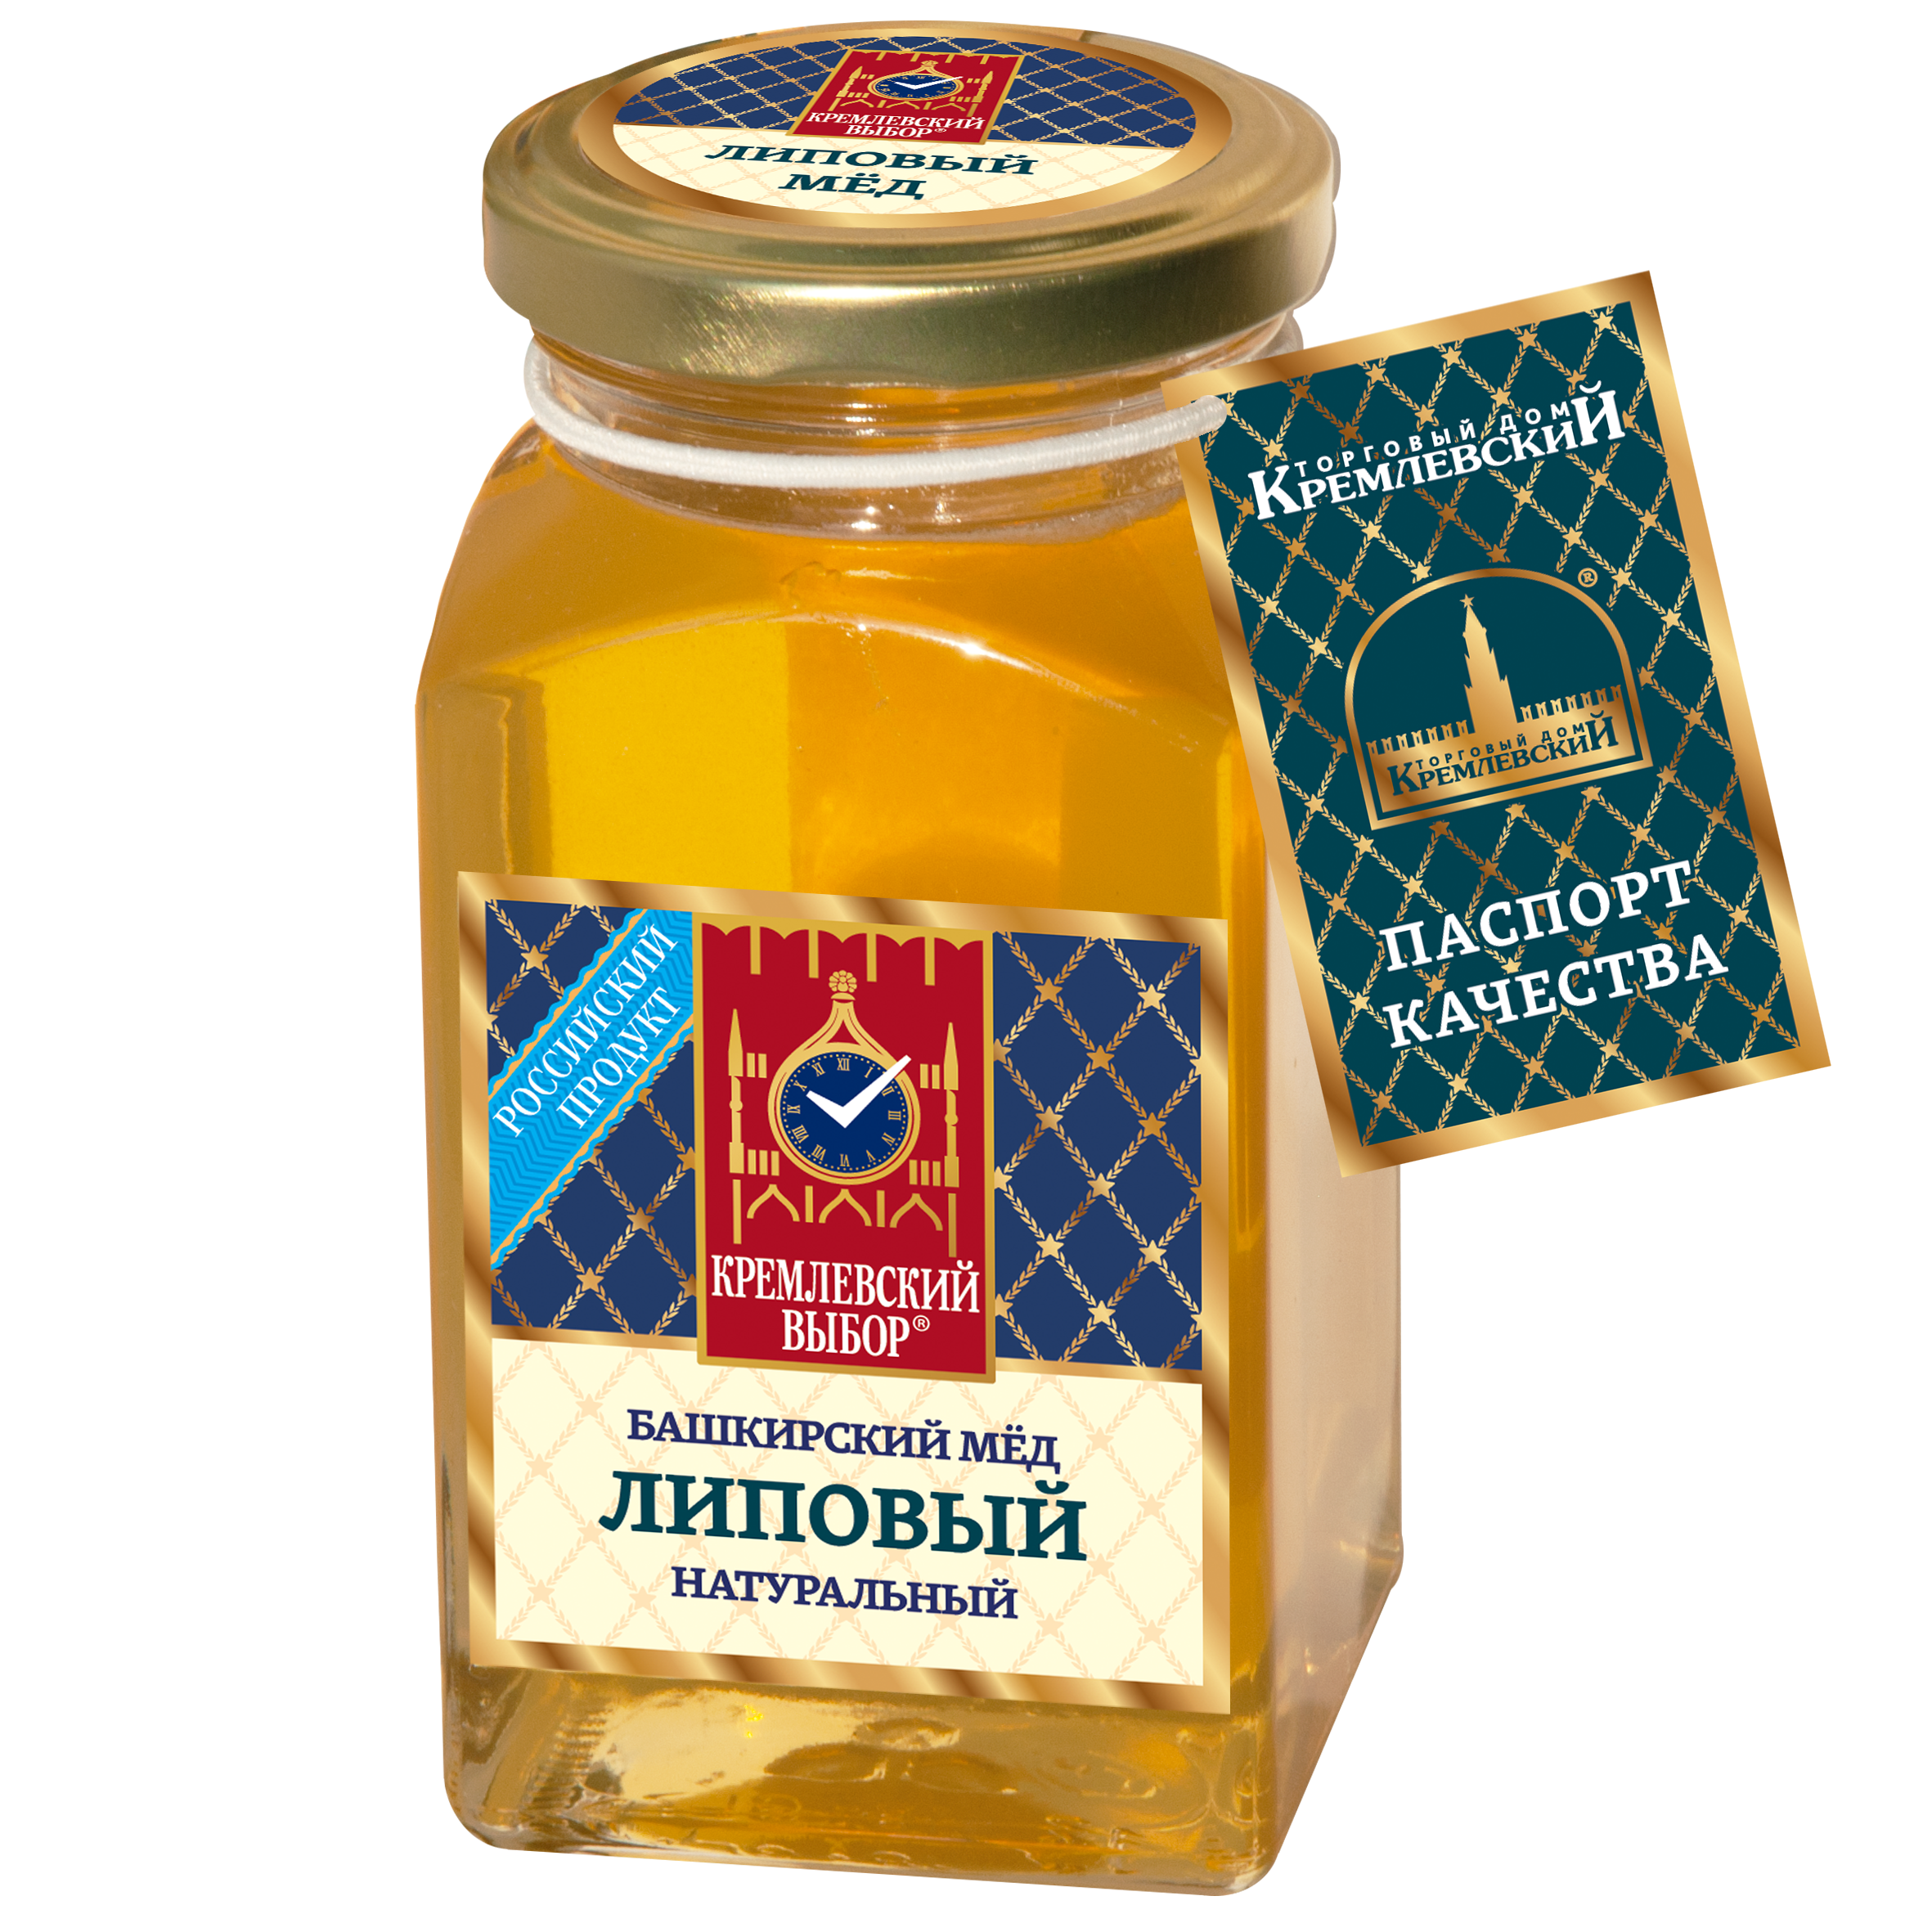 Башкирский мёд липовый натуральный, 400 г